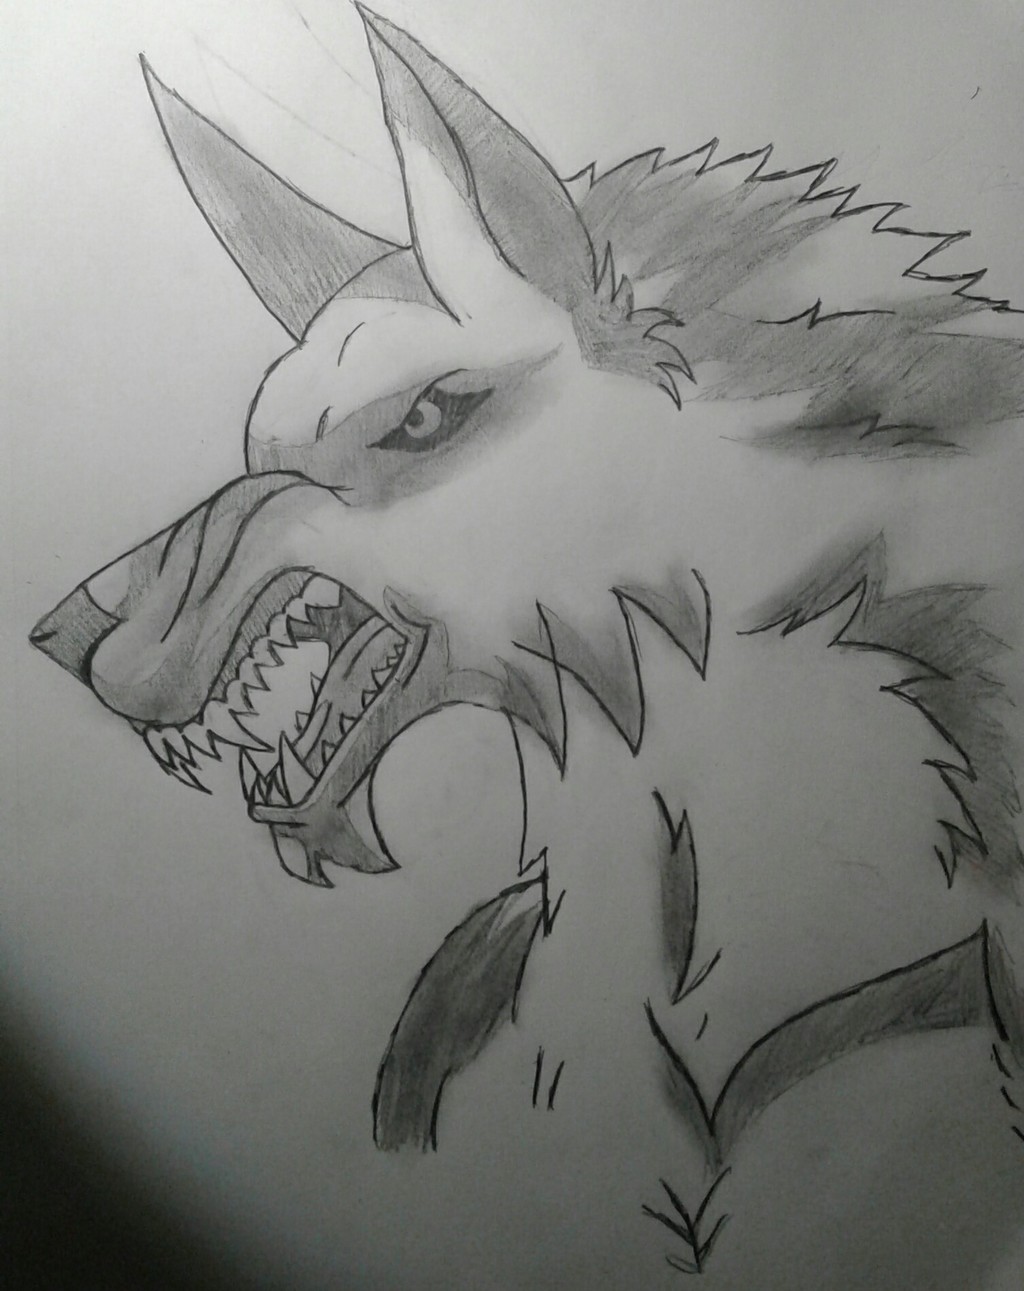 Werewolf 